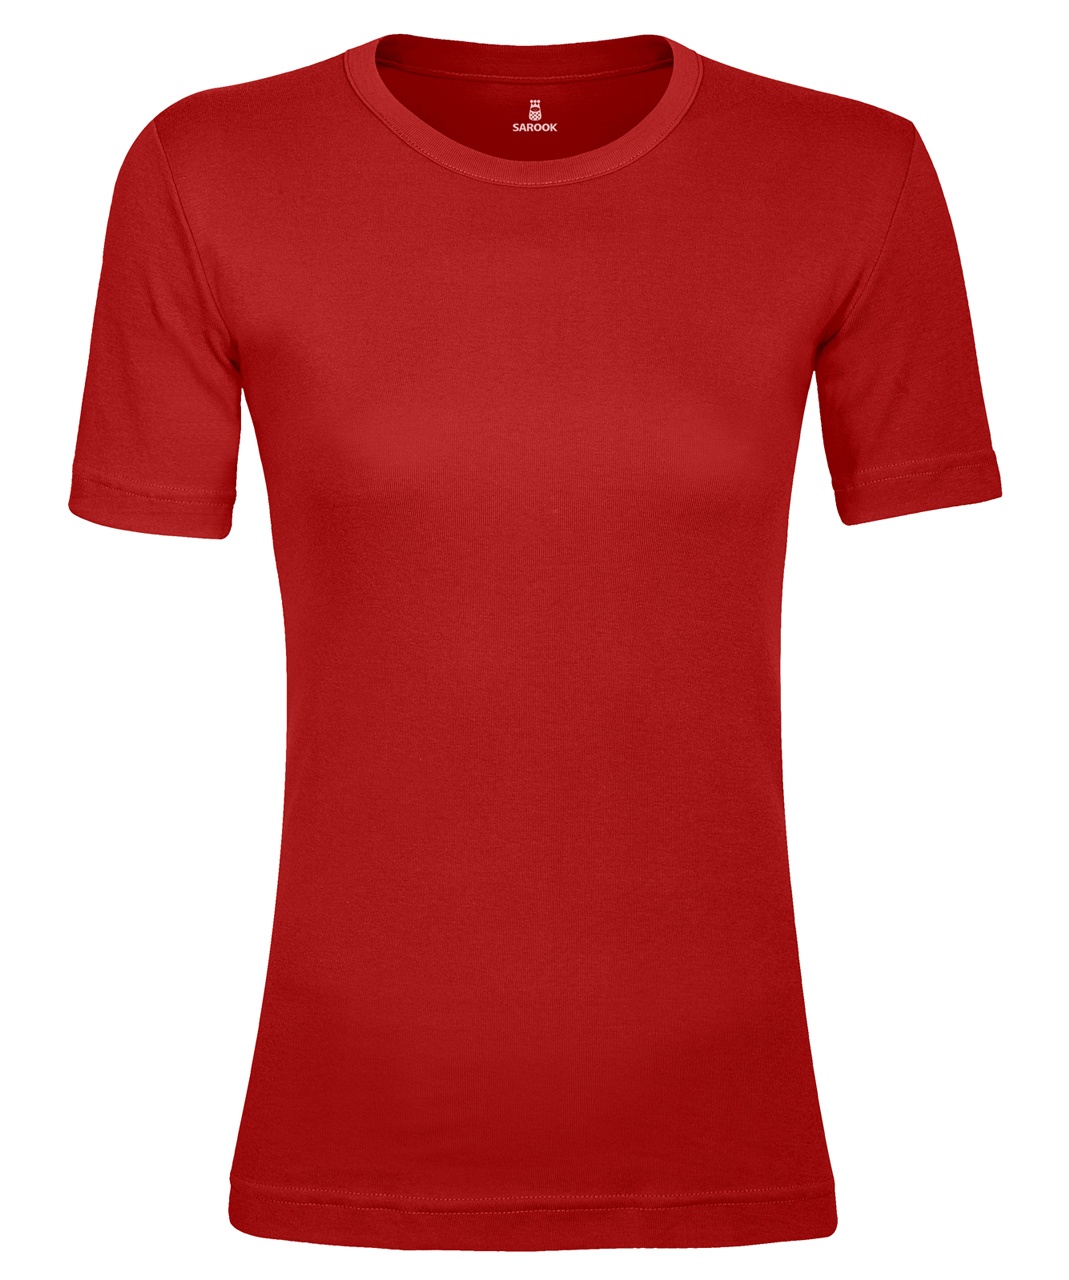 تی شرت زنانه ساروک مدل TZYUF10 رنگ قرمز